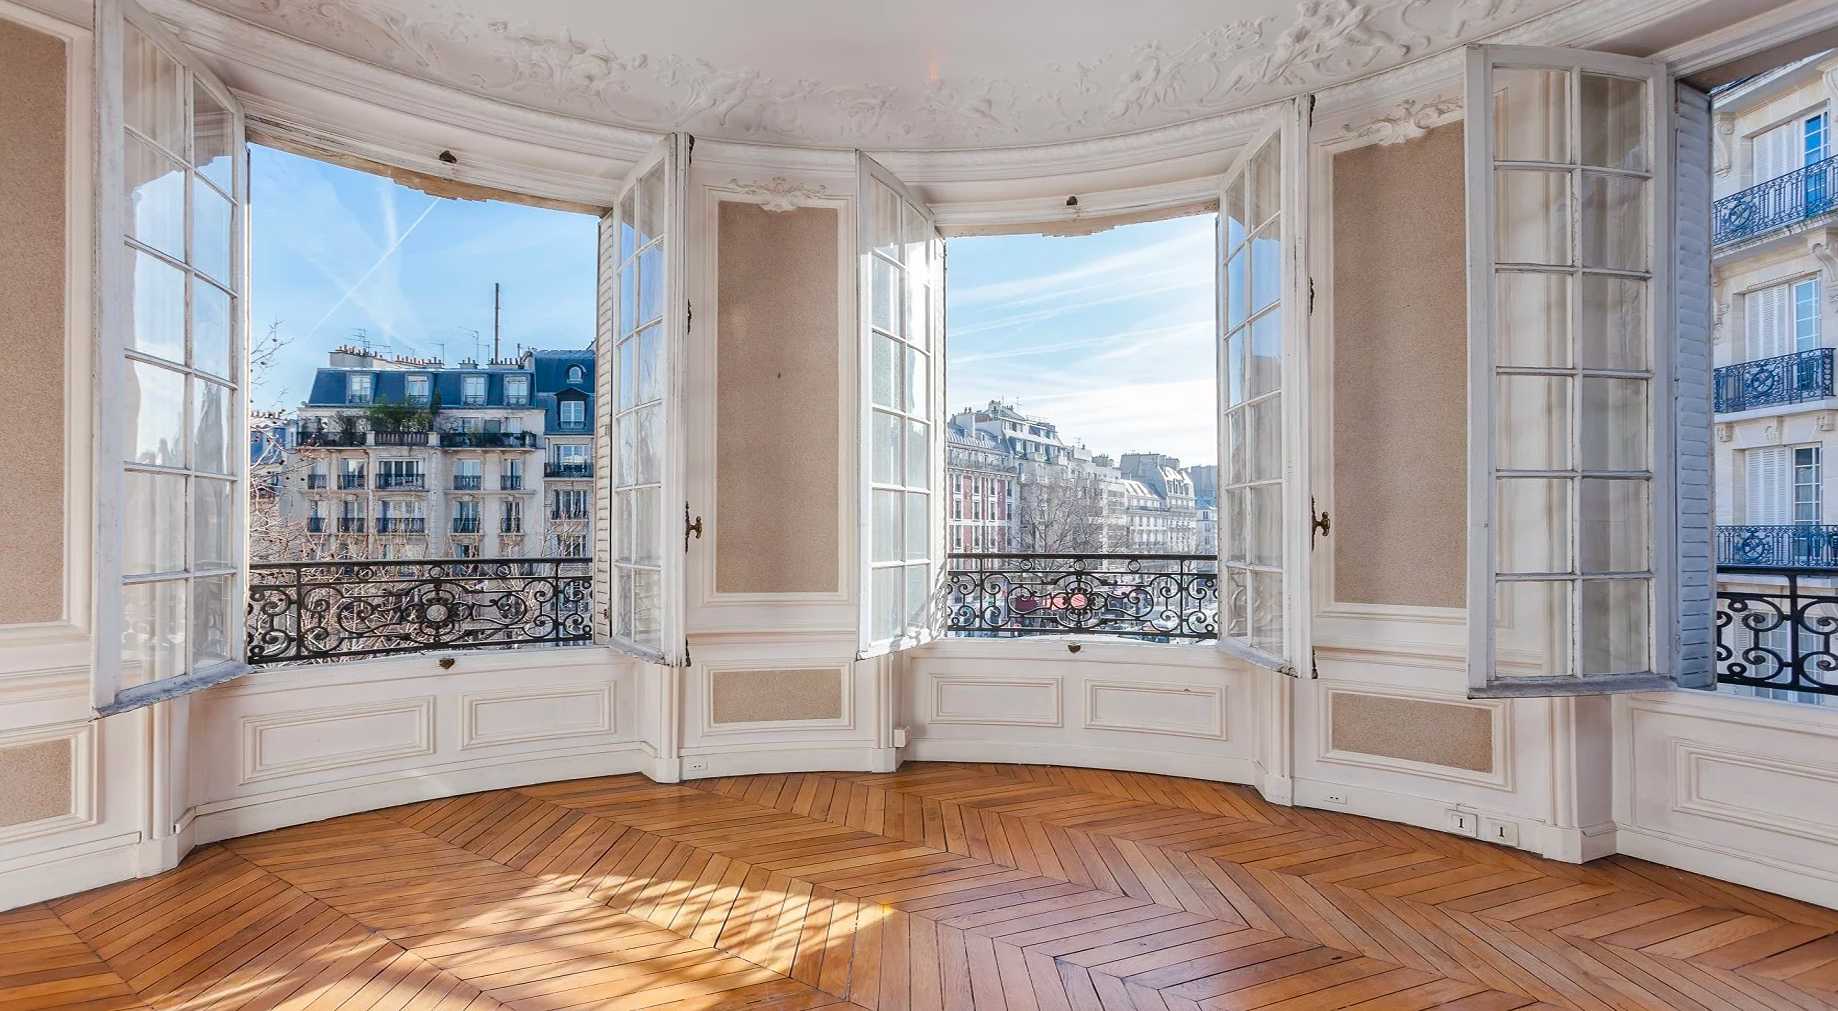 Un architecte vous conseille lorsque vous êtes sur le point d’acheter un bien immobilier à Nantes